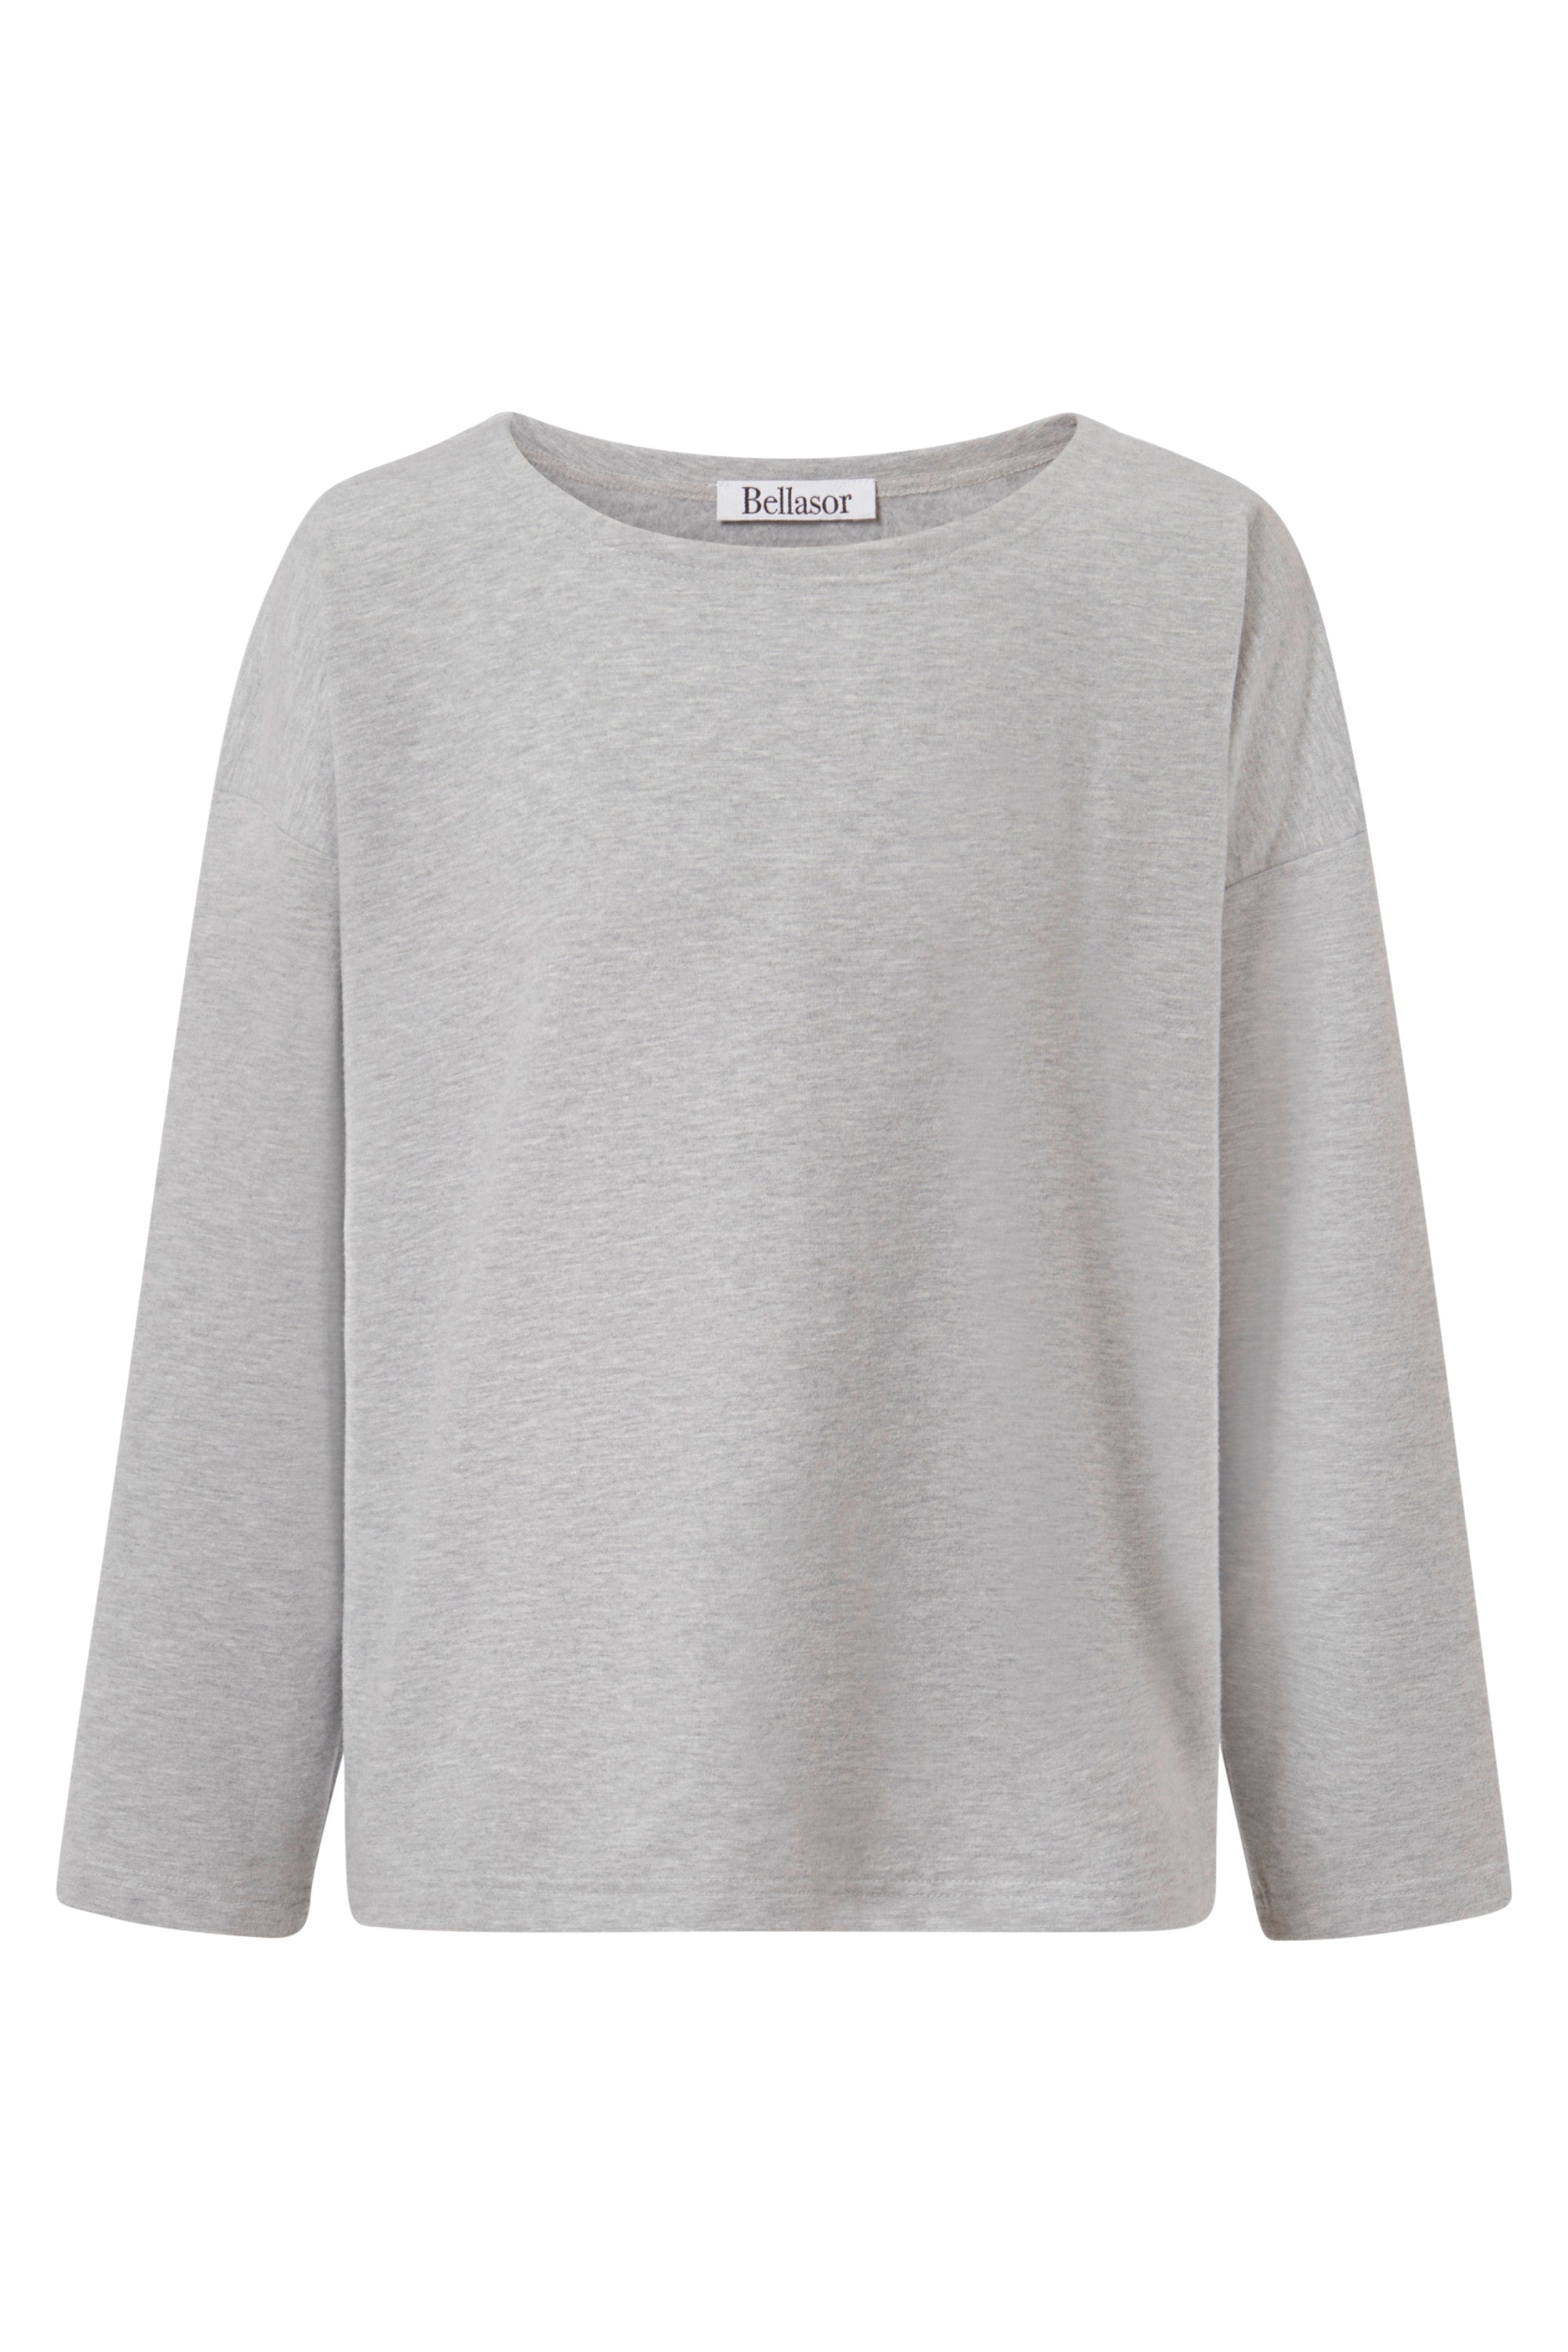 Weicher Pullover in grau auf einem weißen Hintergrund.